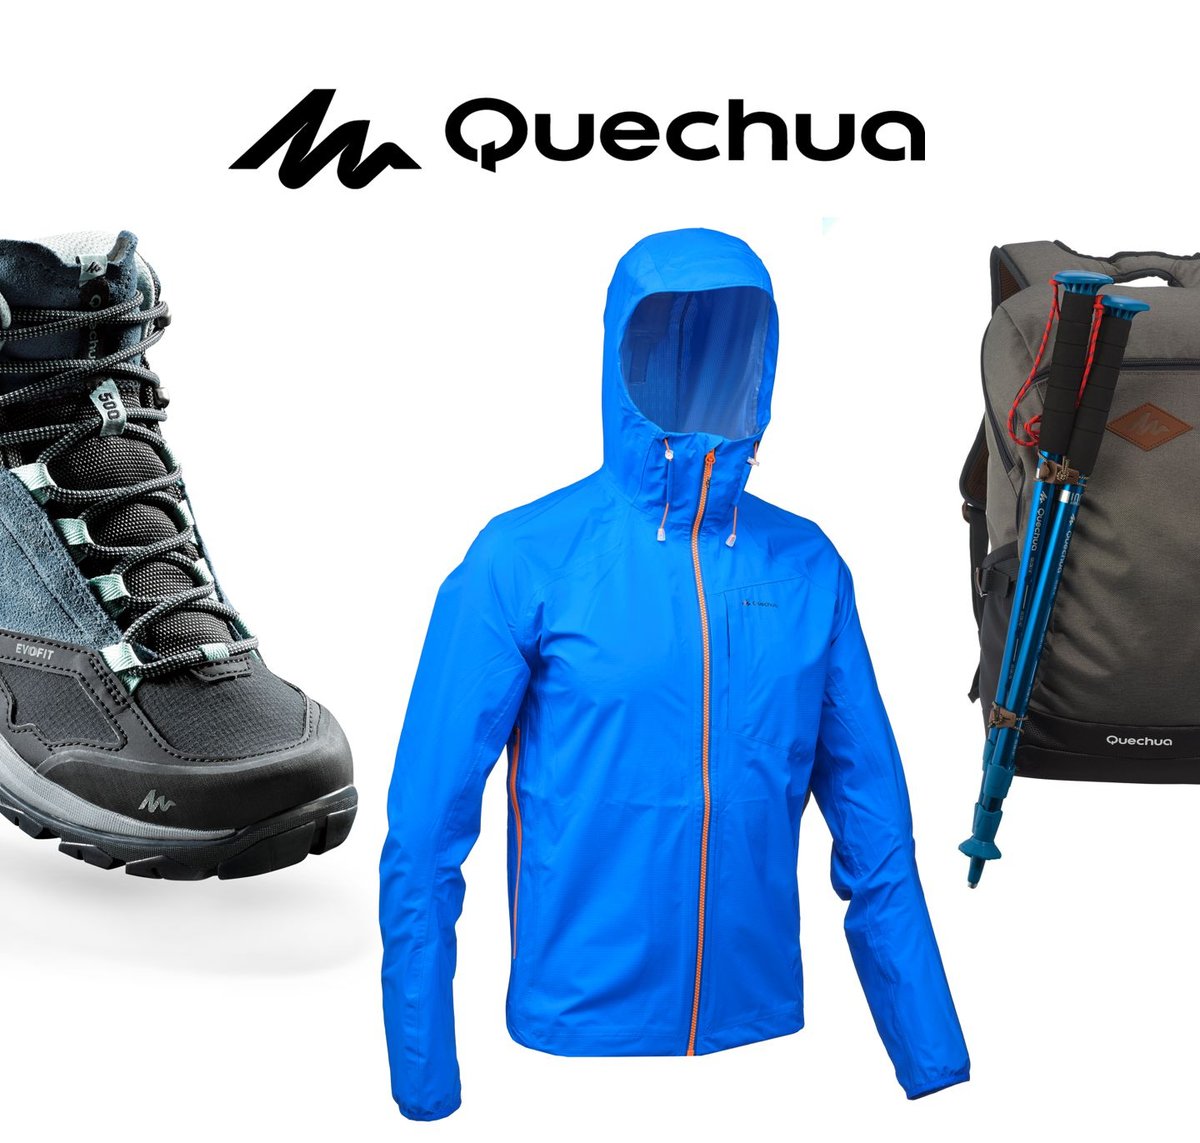 Quechua Forrás: Decathlon